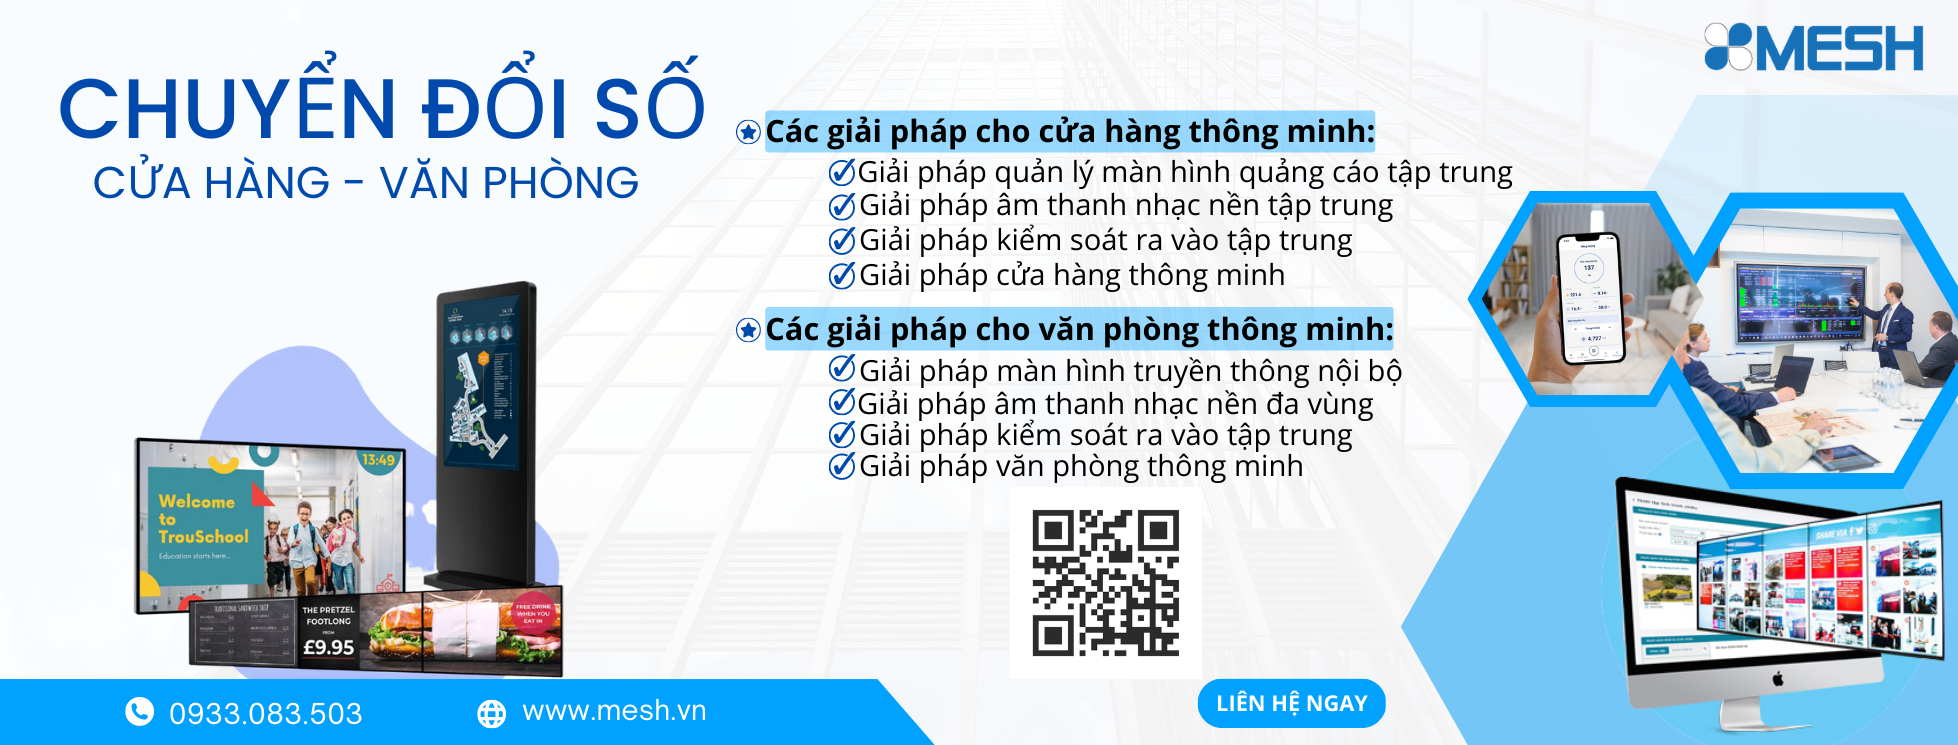 Mesh - Smart Workplace tự hào là nhà cung cấp giải pháp thông minh, chuyển đổi số hàng đầu Việt Nam